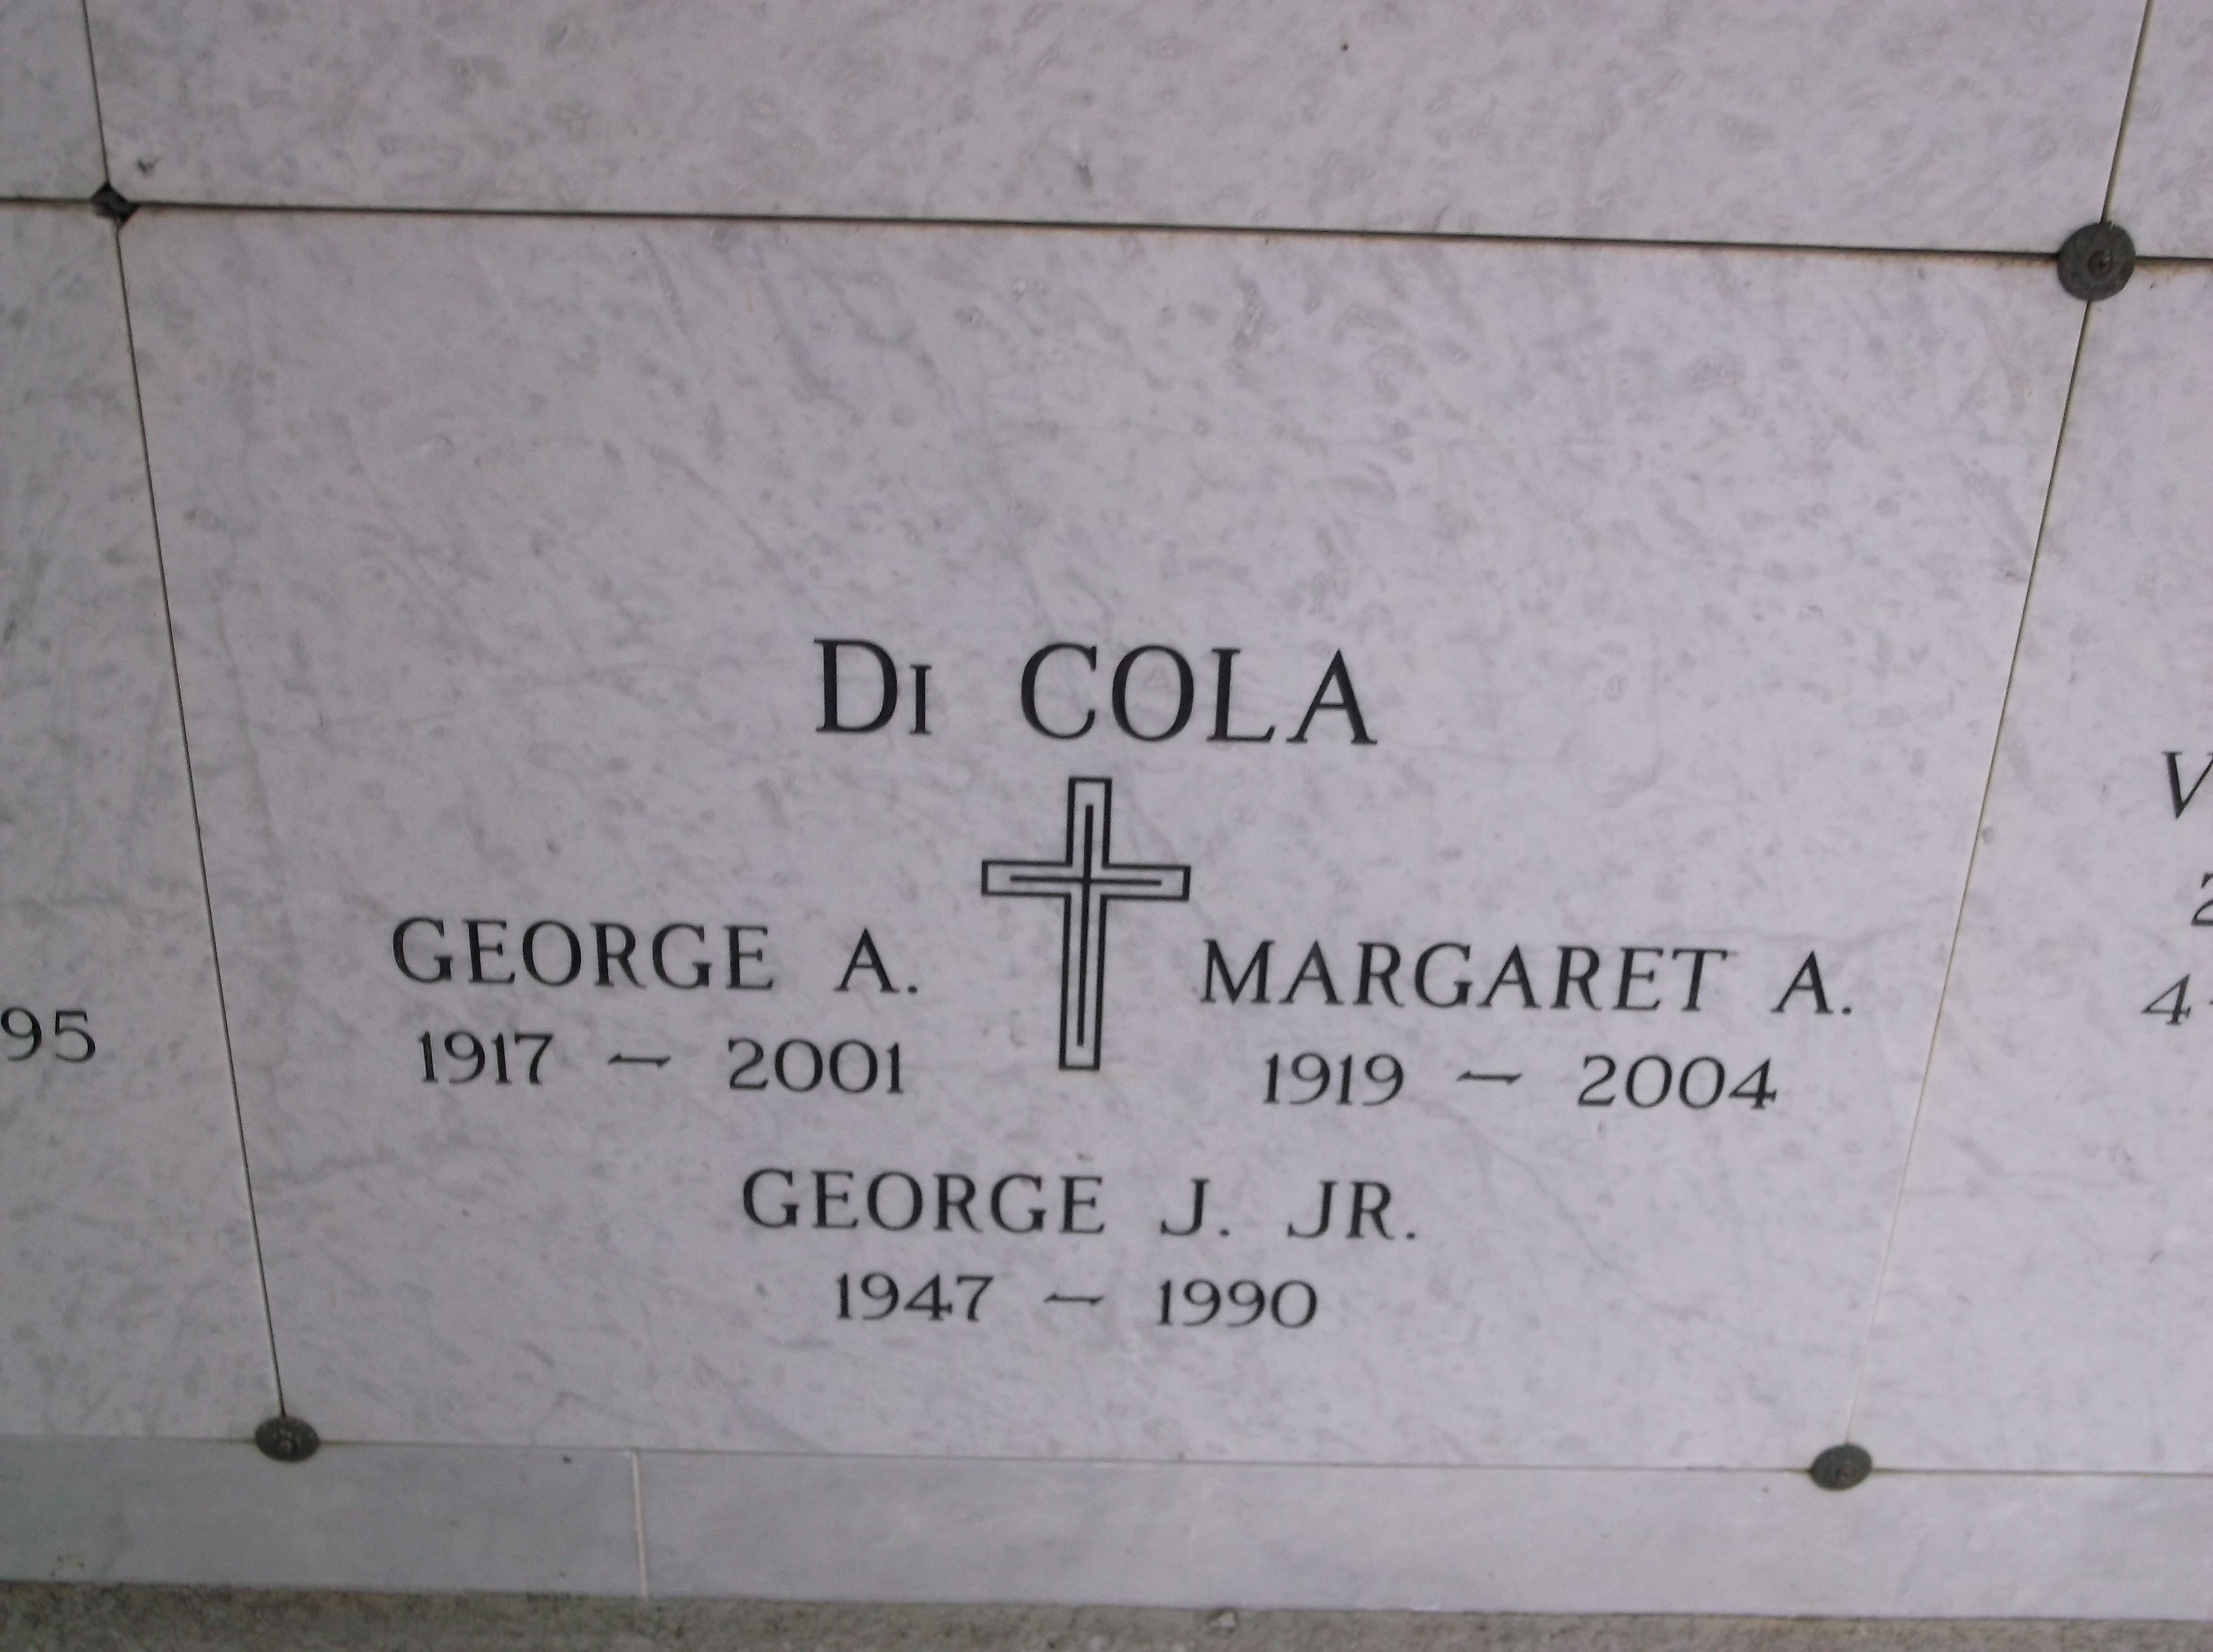 George A Di Cola